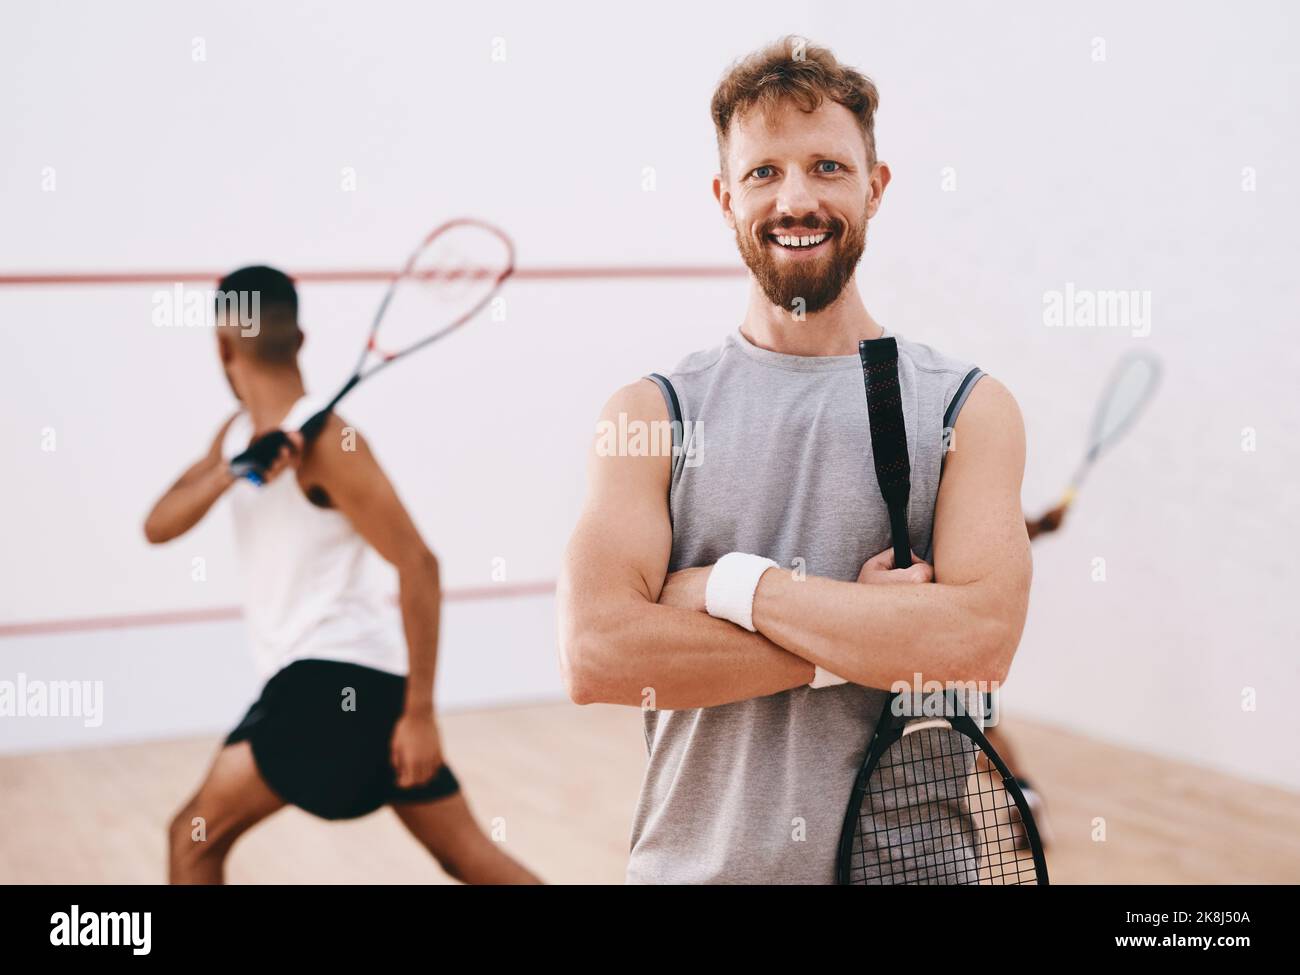 Es braucht Selbstvertrauen, um in diesem Spiel zu konkurrieren. Porträt eines jungen Mannes, der mit seinen Teamkollegen im Hintergrund ein Squashspiel spielt. Stockfoto